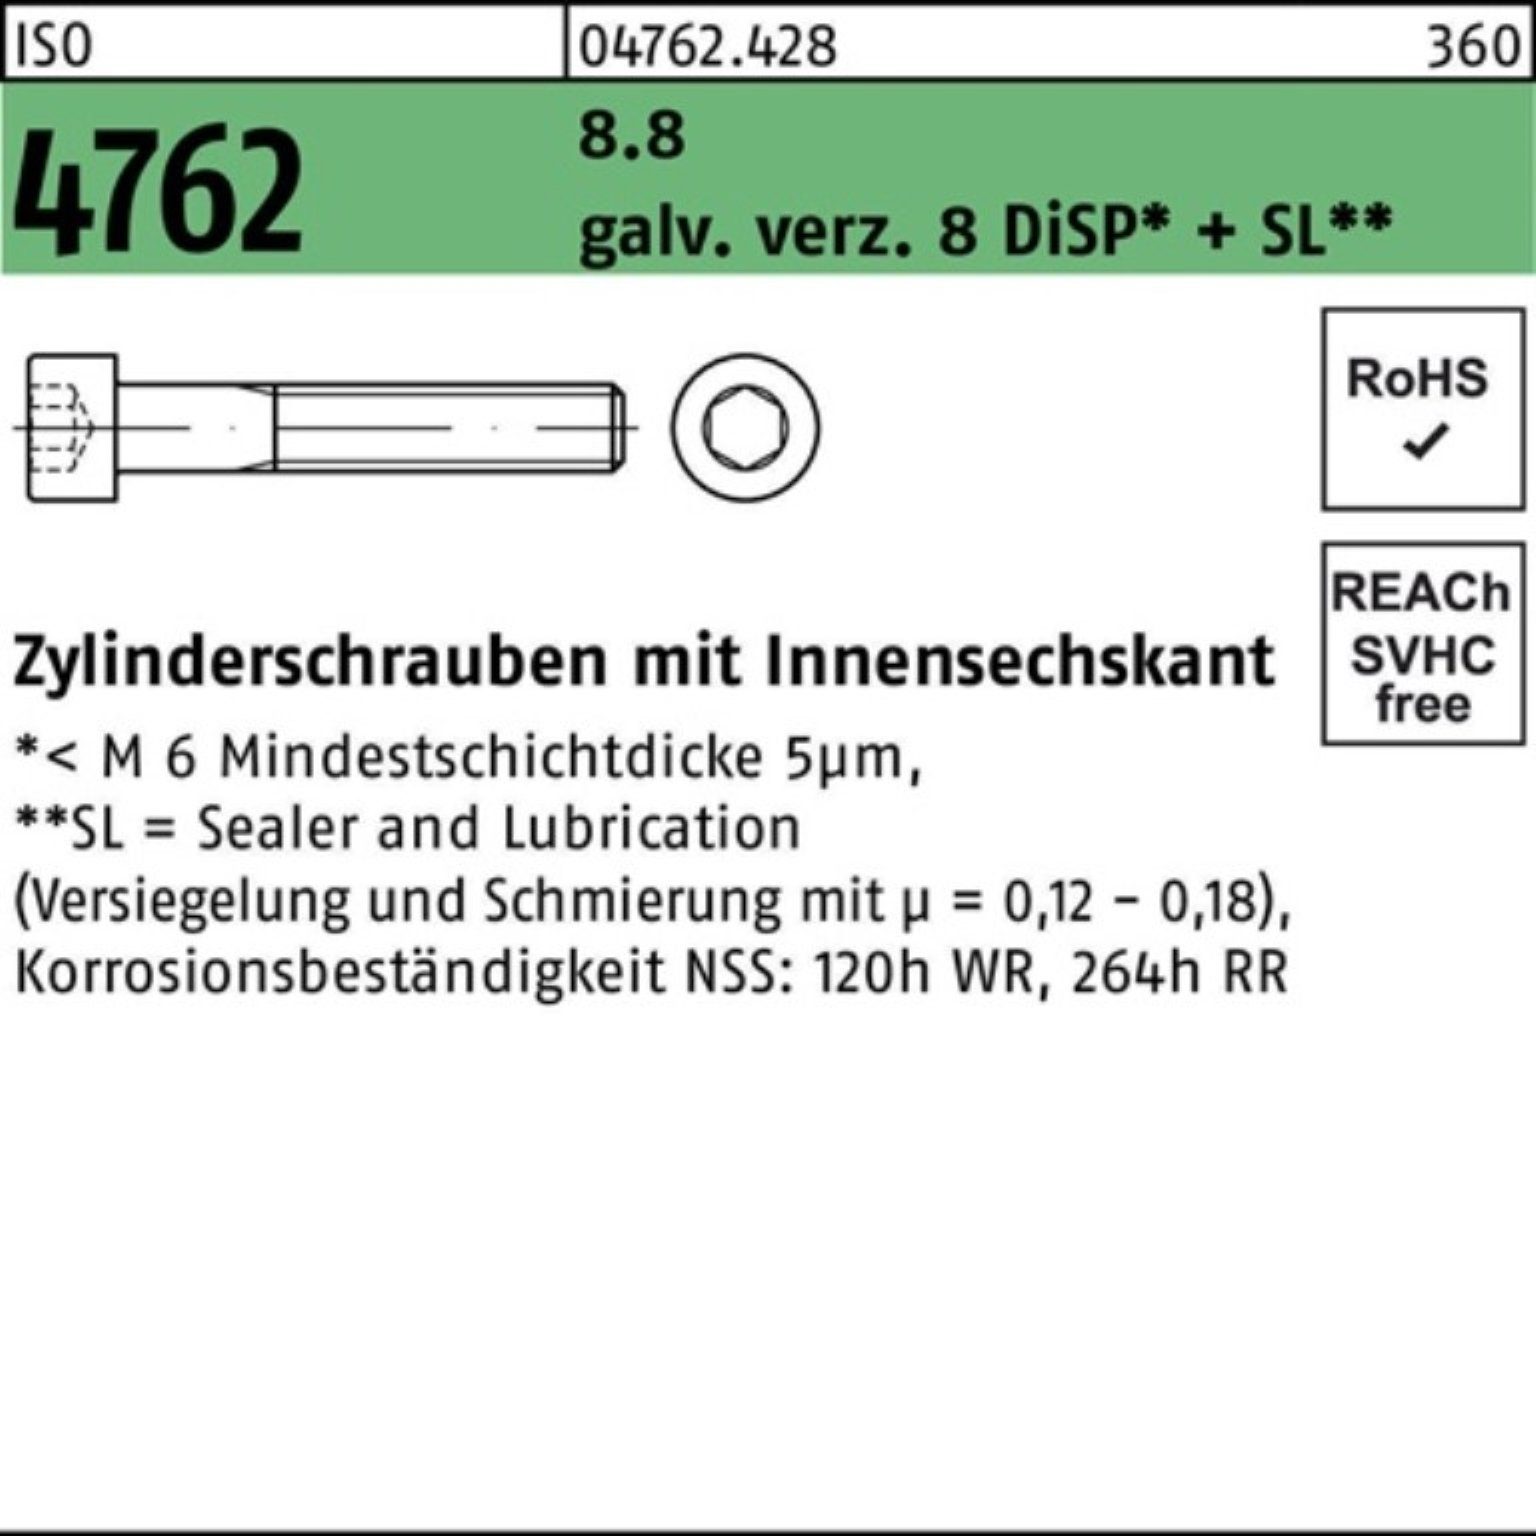 Pack ISO Zylinderschraube 500er Zylinderschraube M6x16 8 Innen-6kt 4762 8.8 galv.verz. Reyher